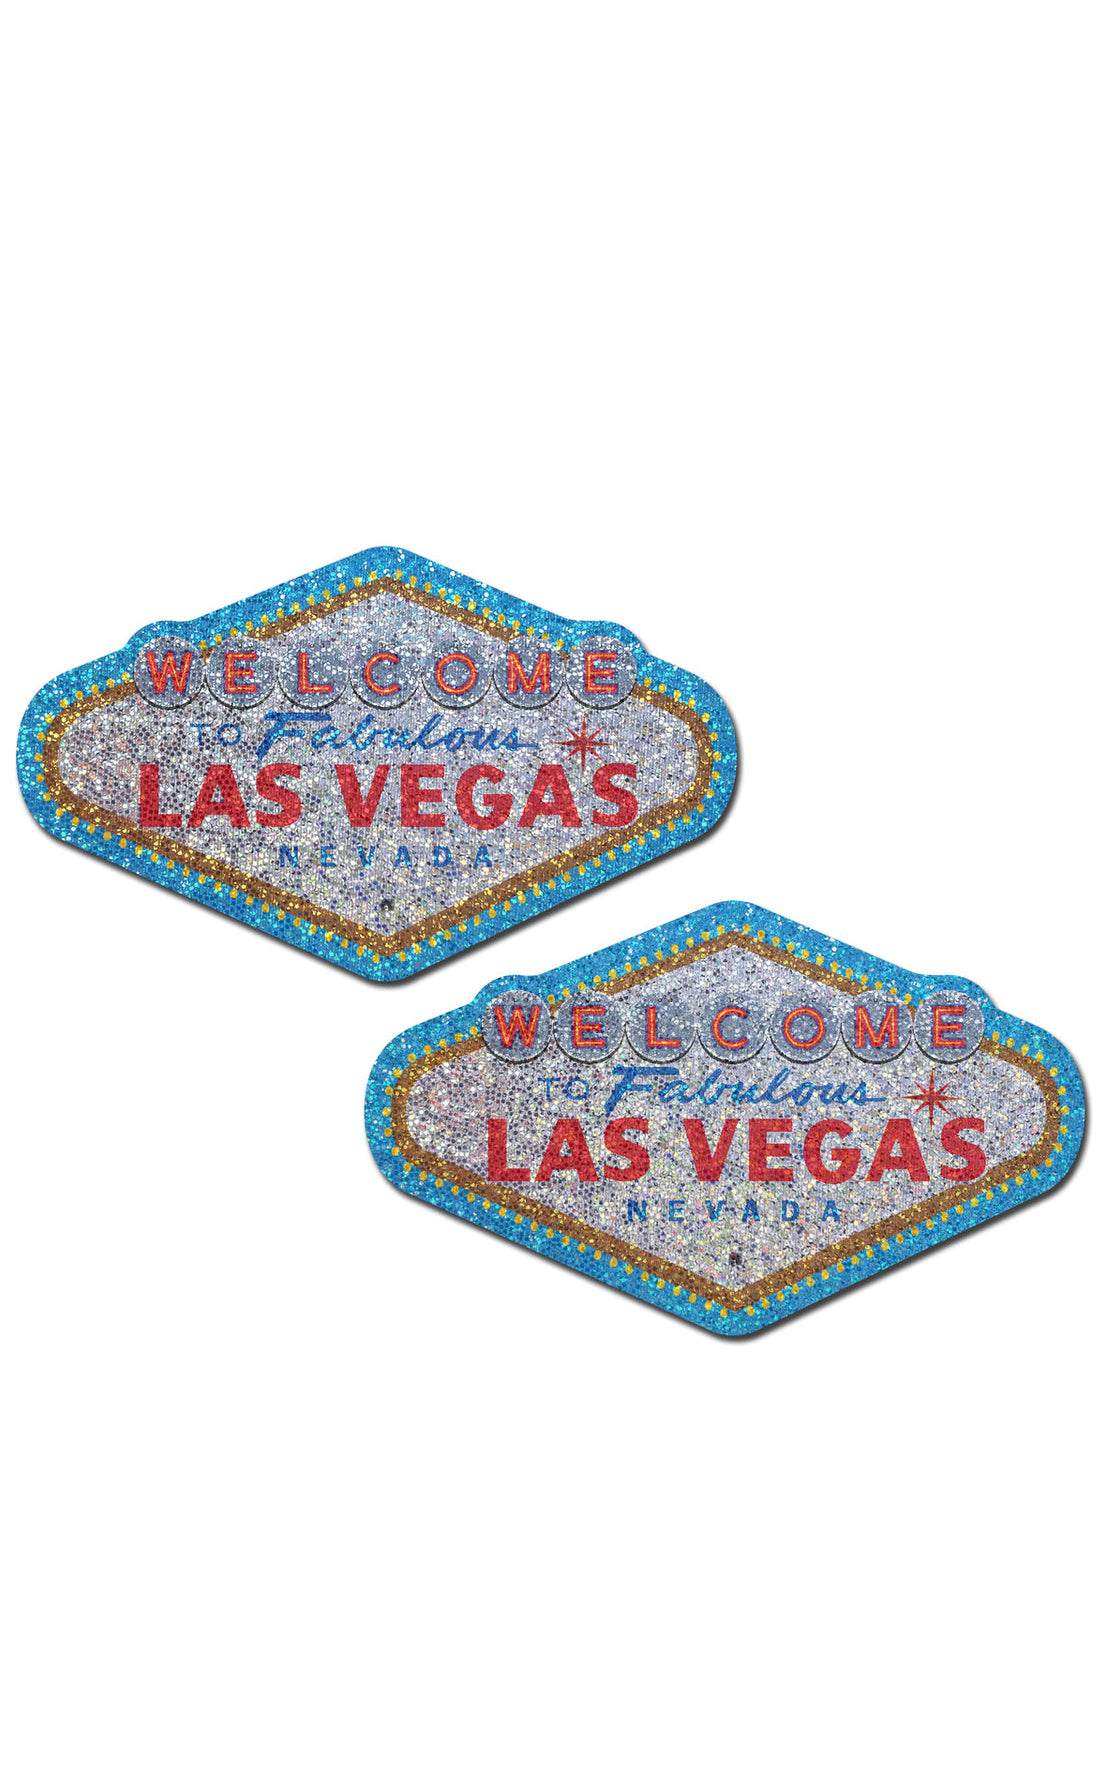 Pastease: Las Vegas Glitter Pasties